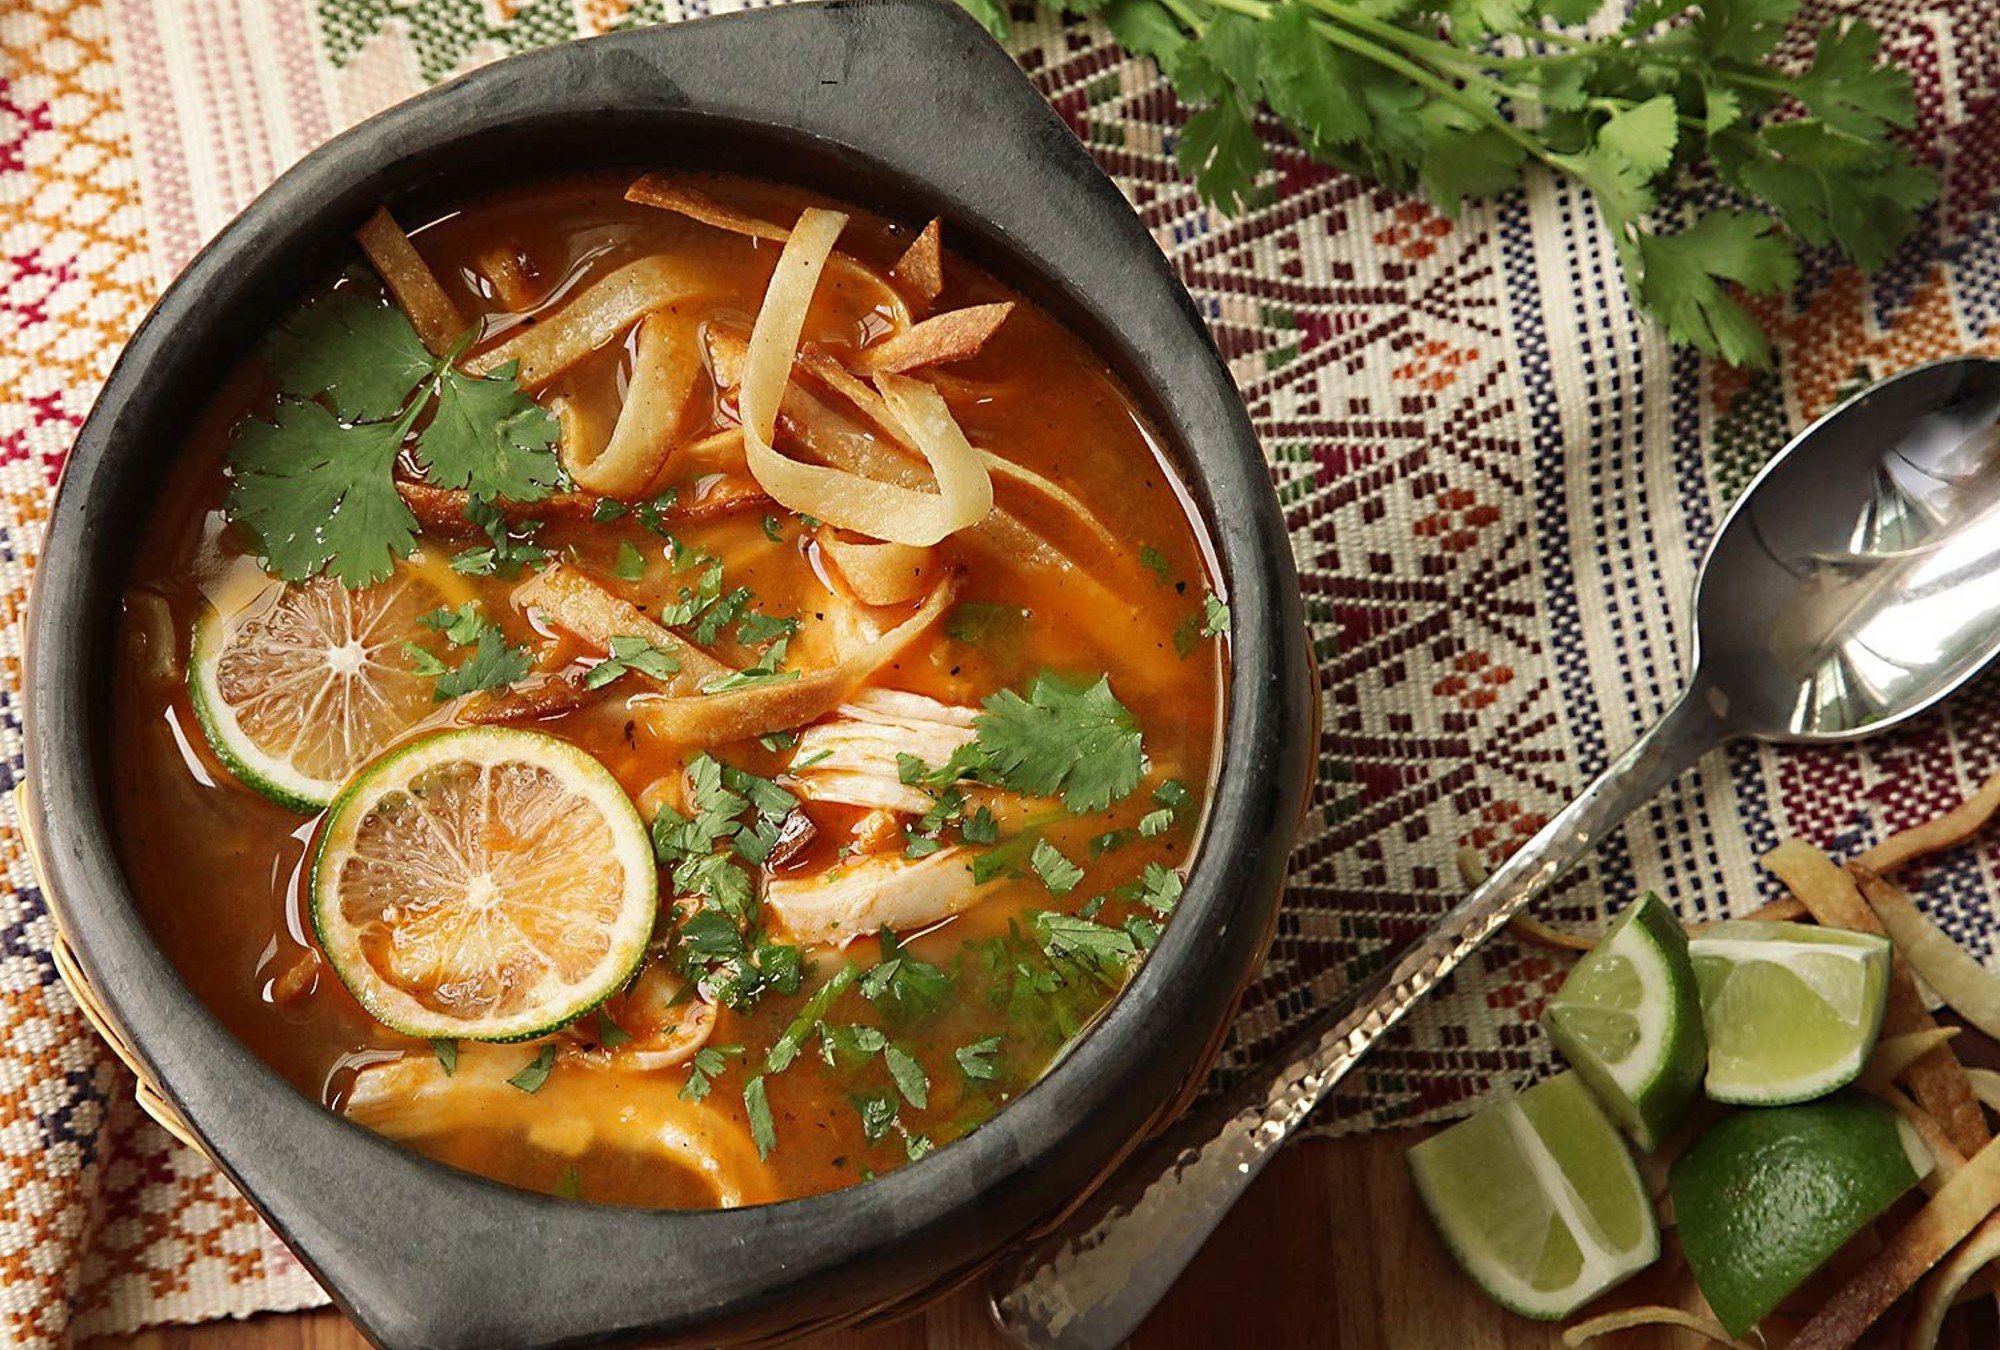 La sopa de lima, oriunda de Yucatán, ha sido considerada entre las mejores sopas del mundo.